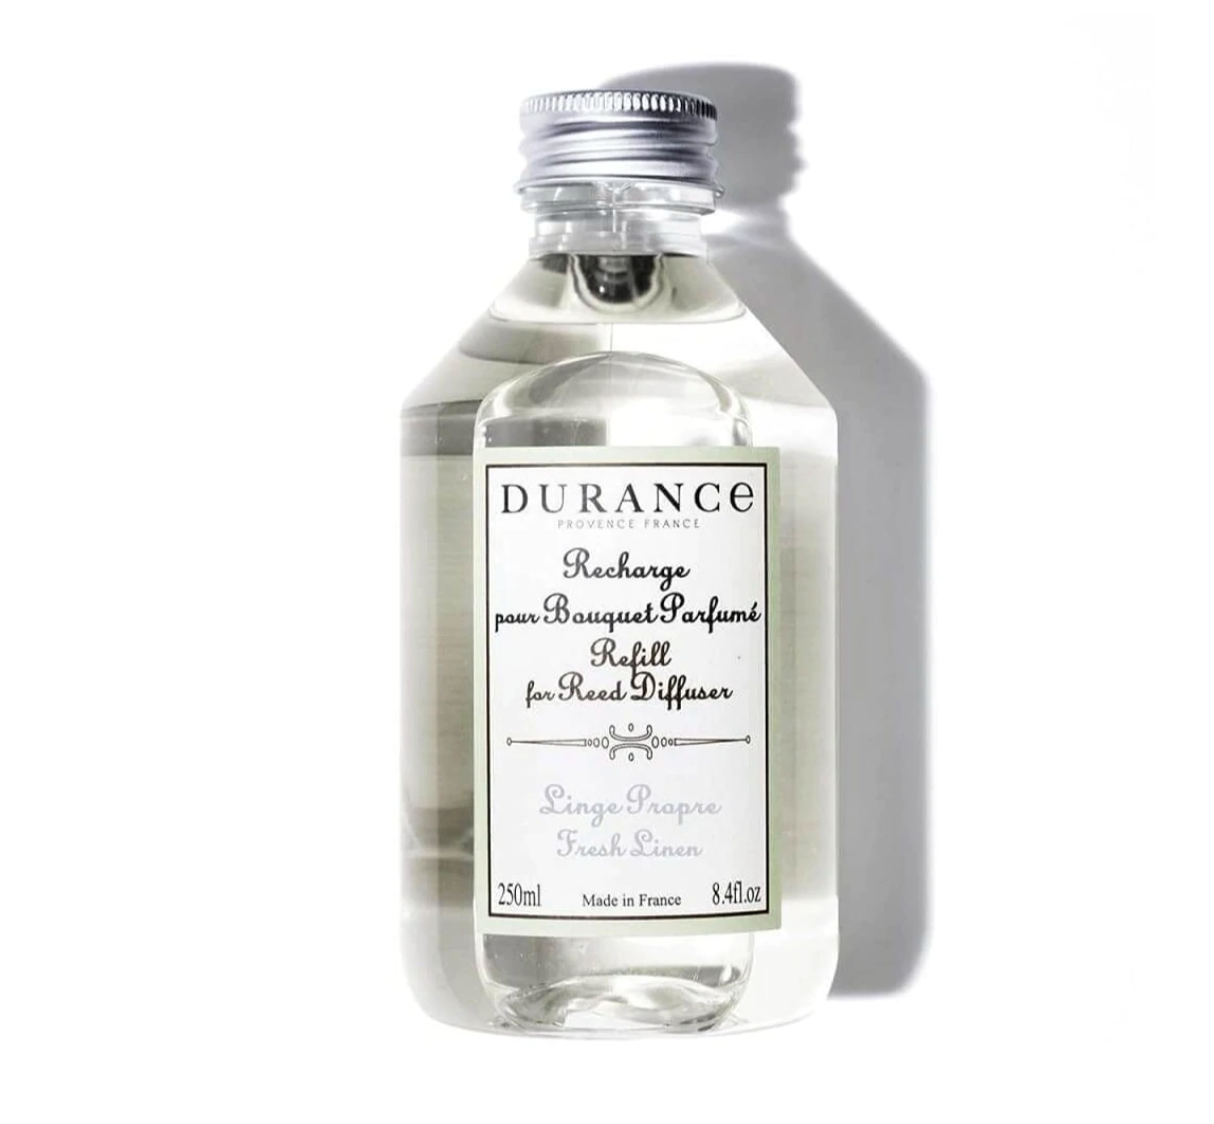 Durance refill fresh linen fragrance. 